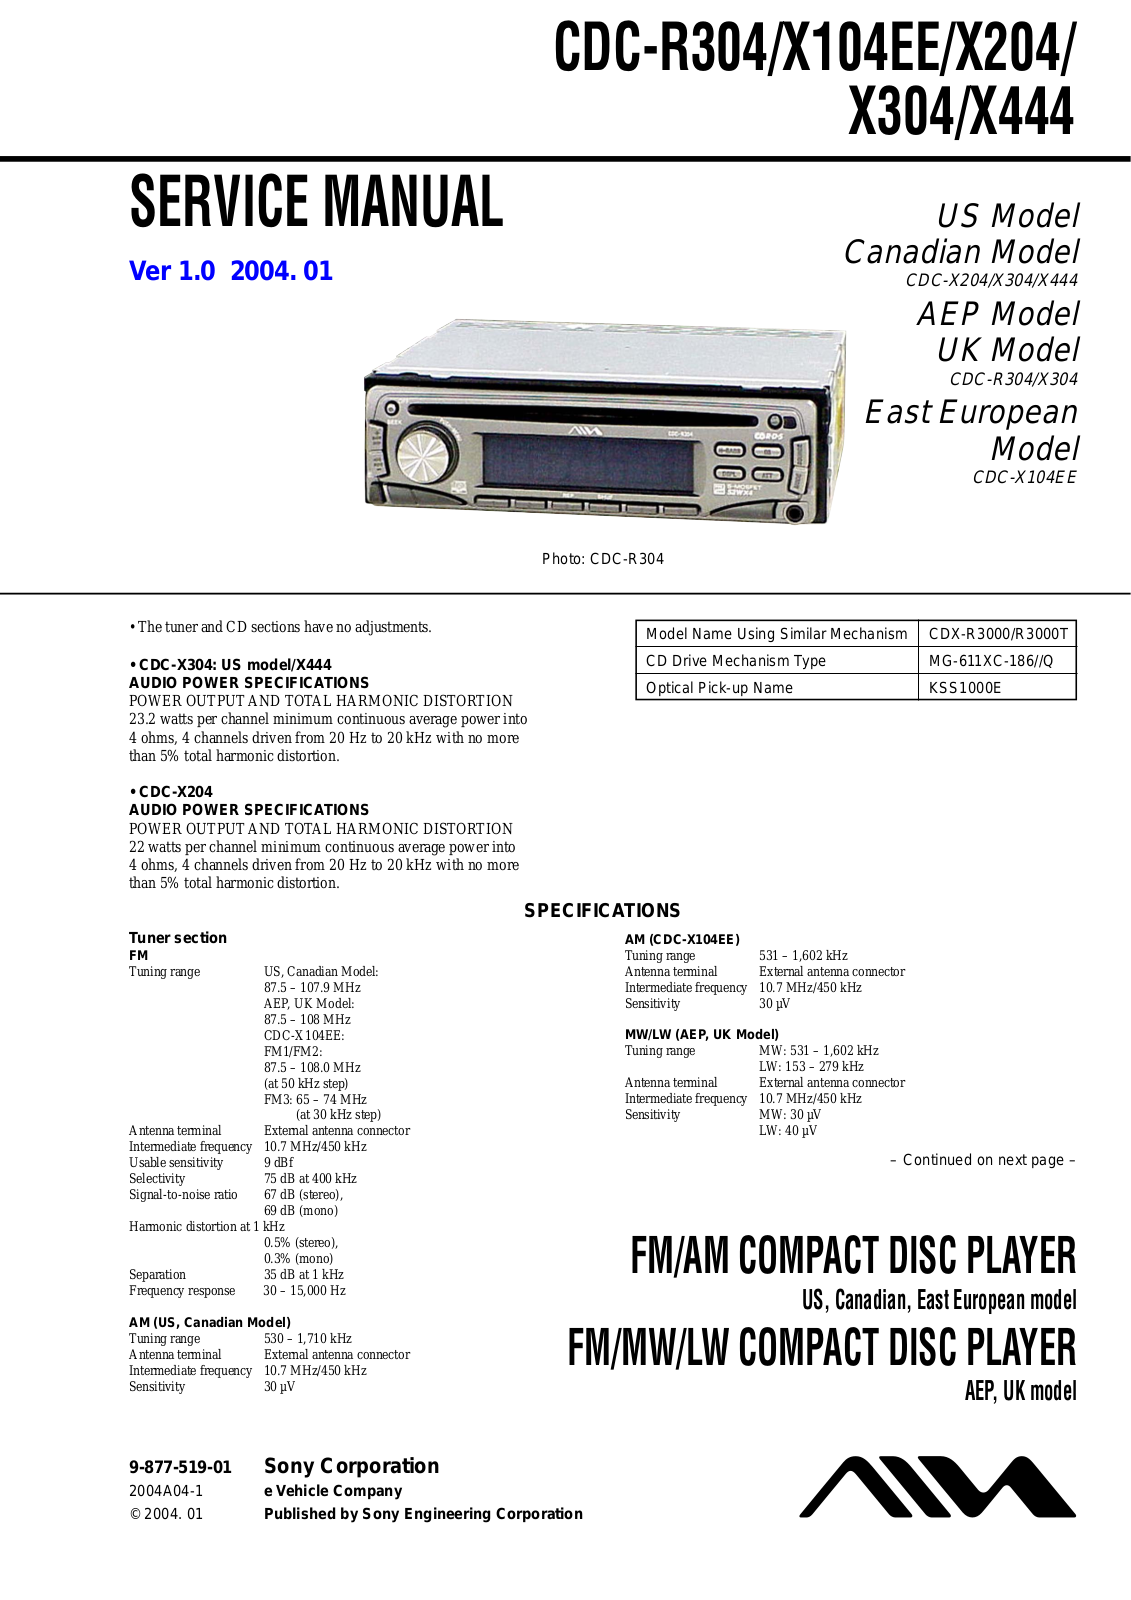 Aiwa CDCR-304, CDCX-104-EE, CDCX-204, CDCX-304, CDCX-444 Service manual